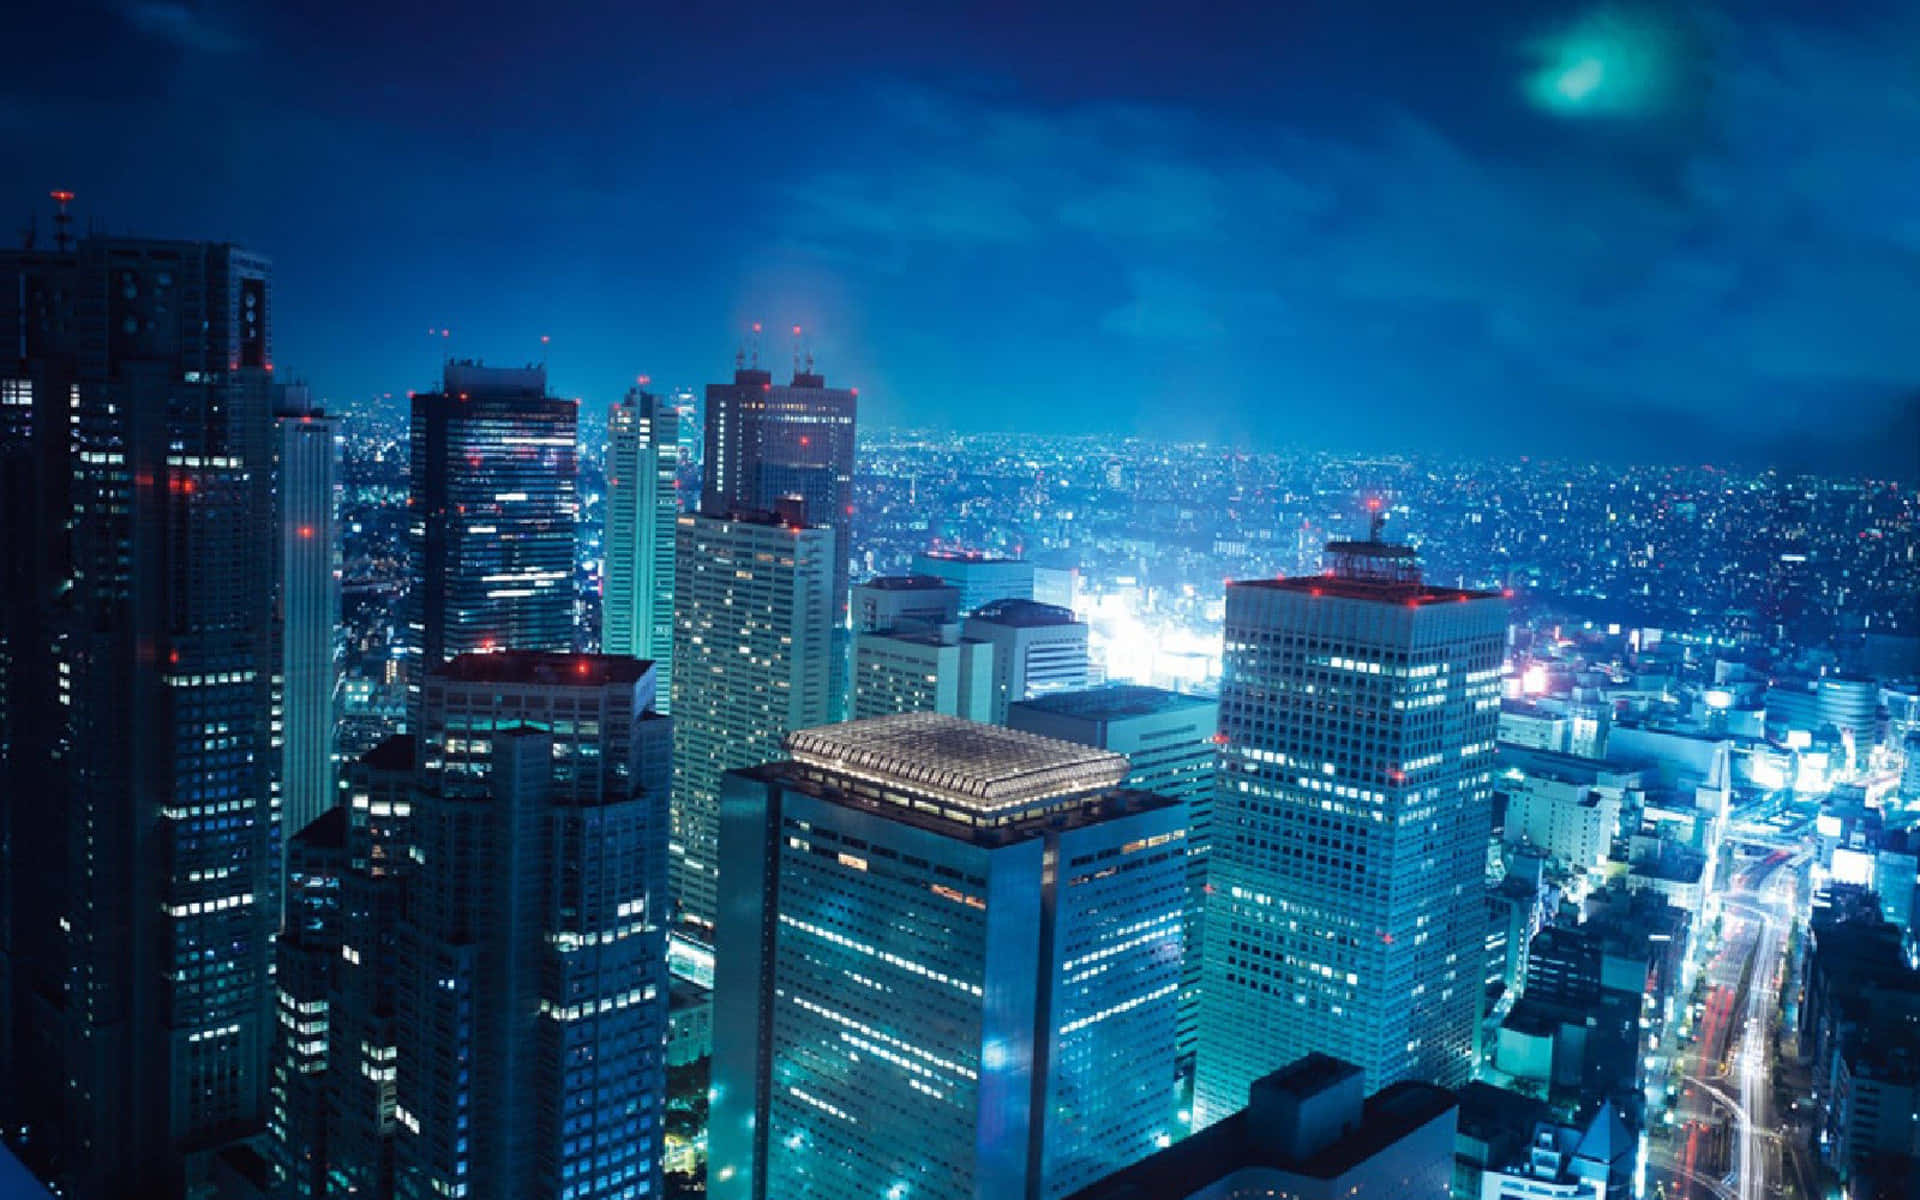 Fondode Pantalla De Tokio Con Temática De Color Azul Claro De La Ciudad.